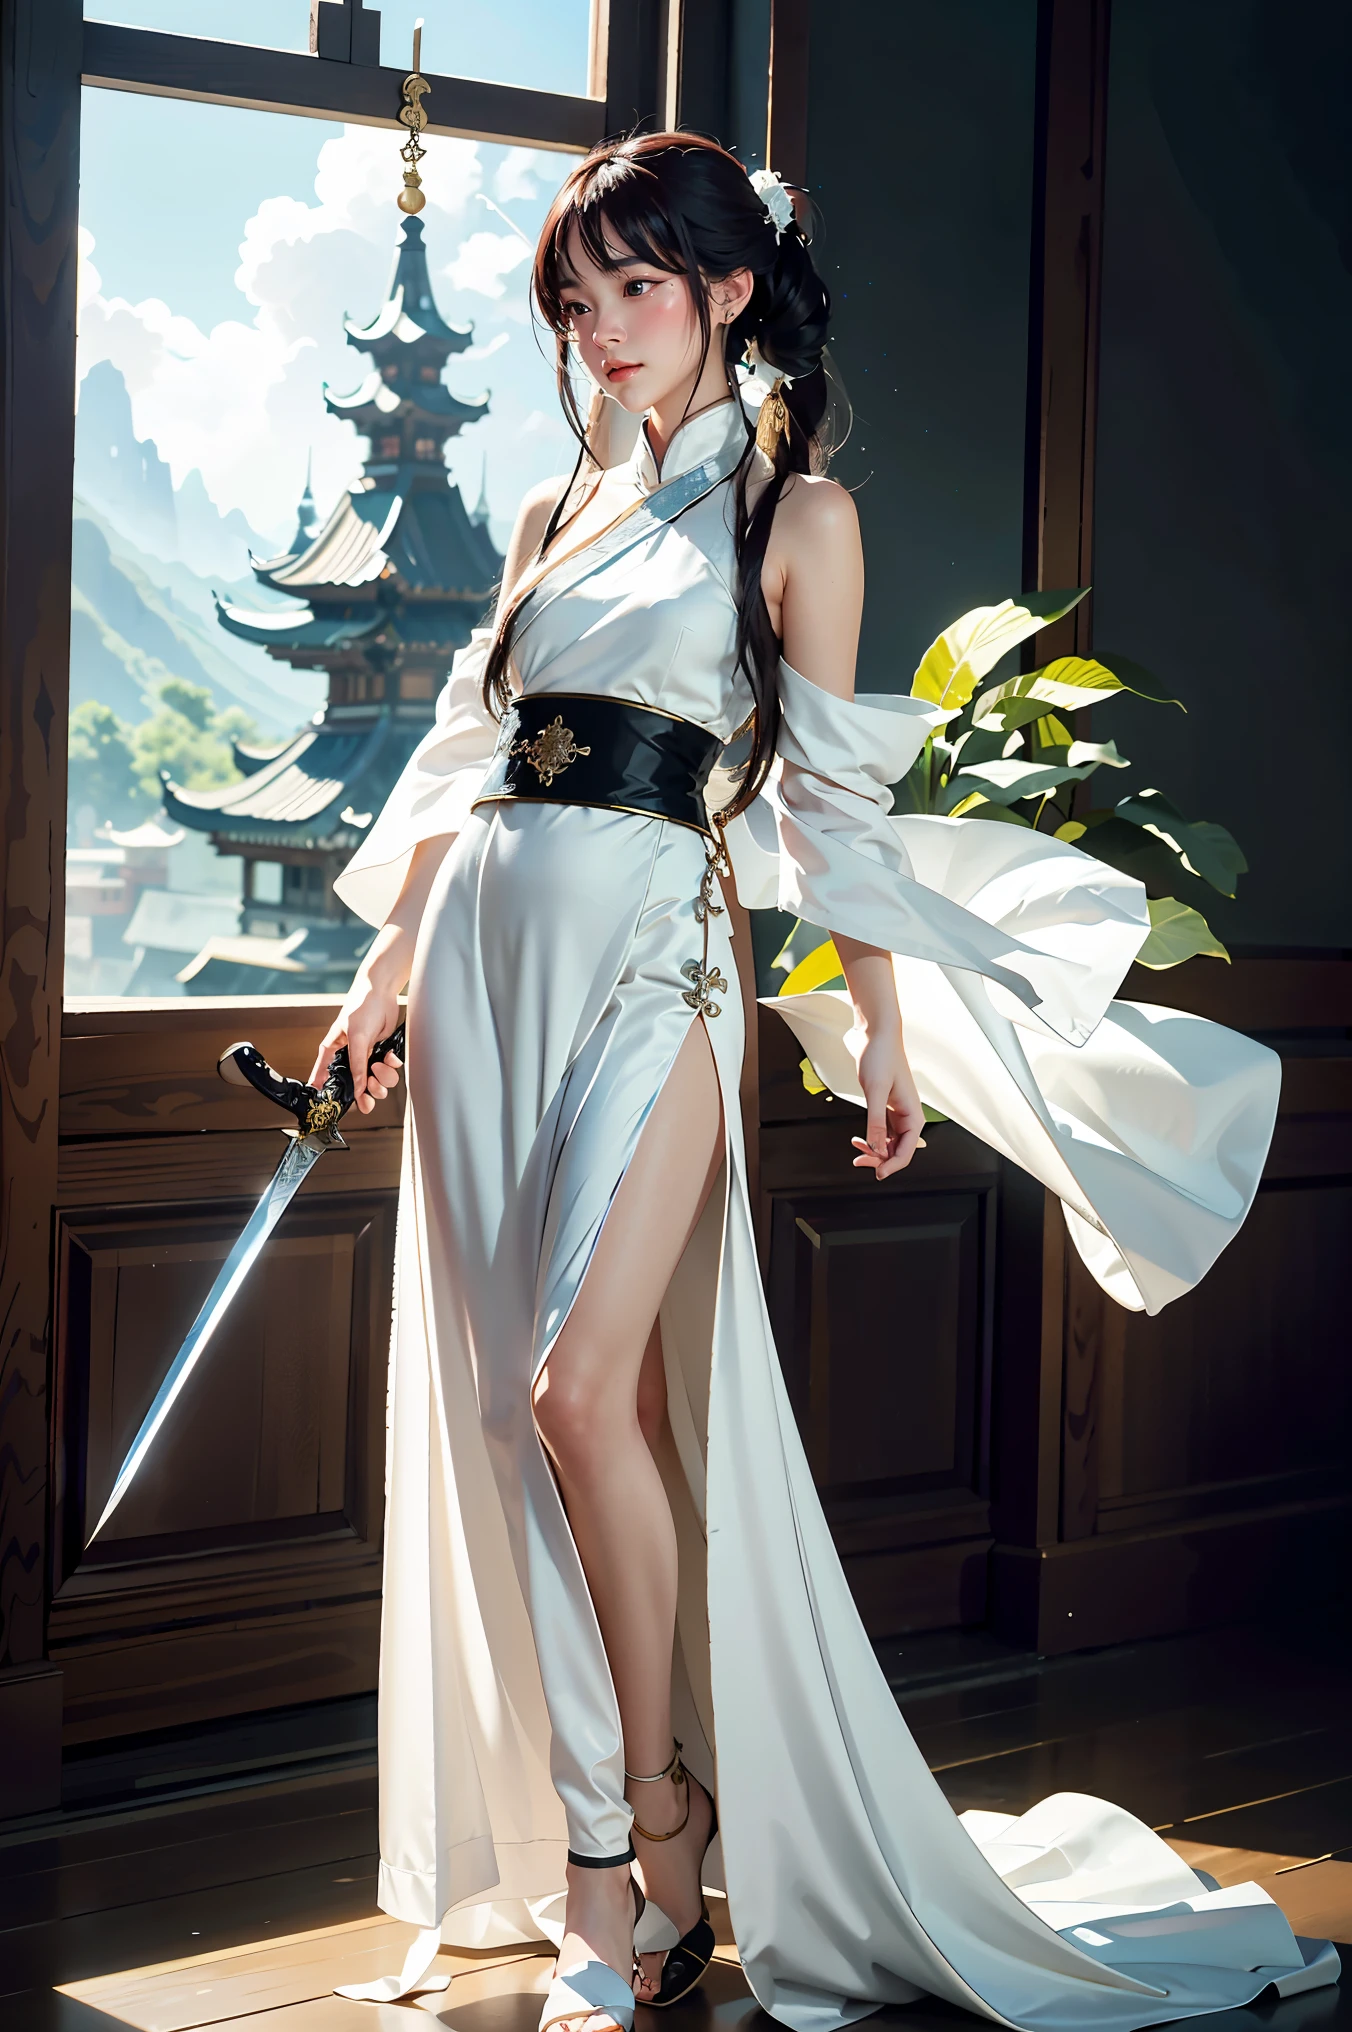 ภาพระยะใกล้ของผู้หญิงถือดาบในชุดสีขาว, ภาพตัวละครโดย Yang J, กำลังมาแรงใน CGSociety, ศิลปะแฟนตาซี, ภาพวาดตัวละครที่สวยงาม, artwork in the style of กูไวซ์, กูไวซ์, ฮานฟู่สีขาว, เสื้อคลุมสีขาวไหล, อู๋เซี่ยทั้งตัว, ศิลปะตัวละครที่ยอดเยี่ยมและประณีต, ศิลปะตัวละครที่น่าทึ่ง, นักฆ่าสาวสวย